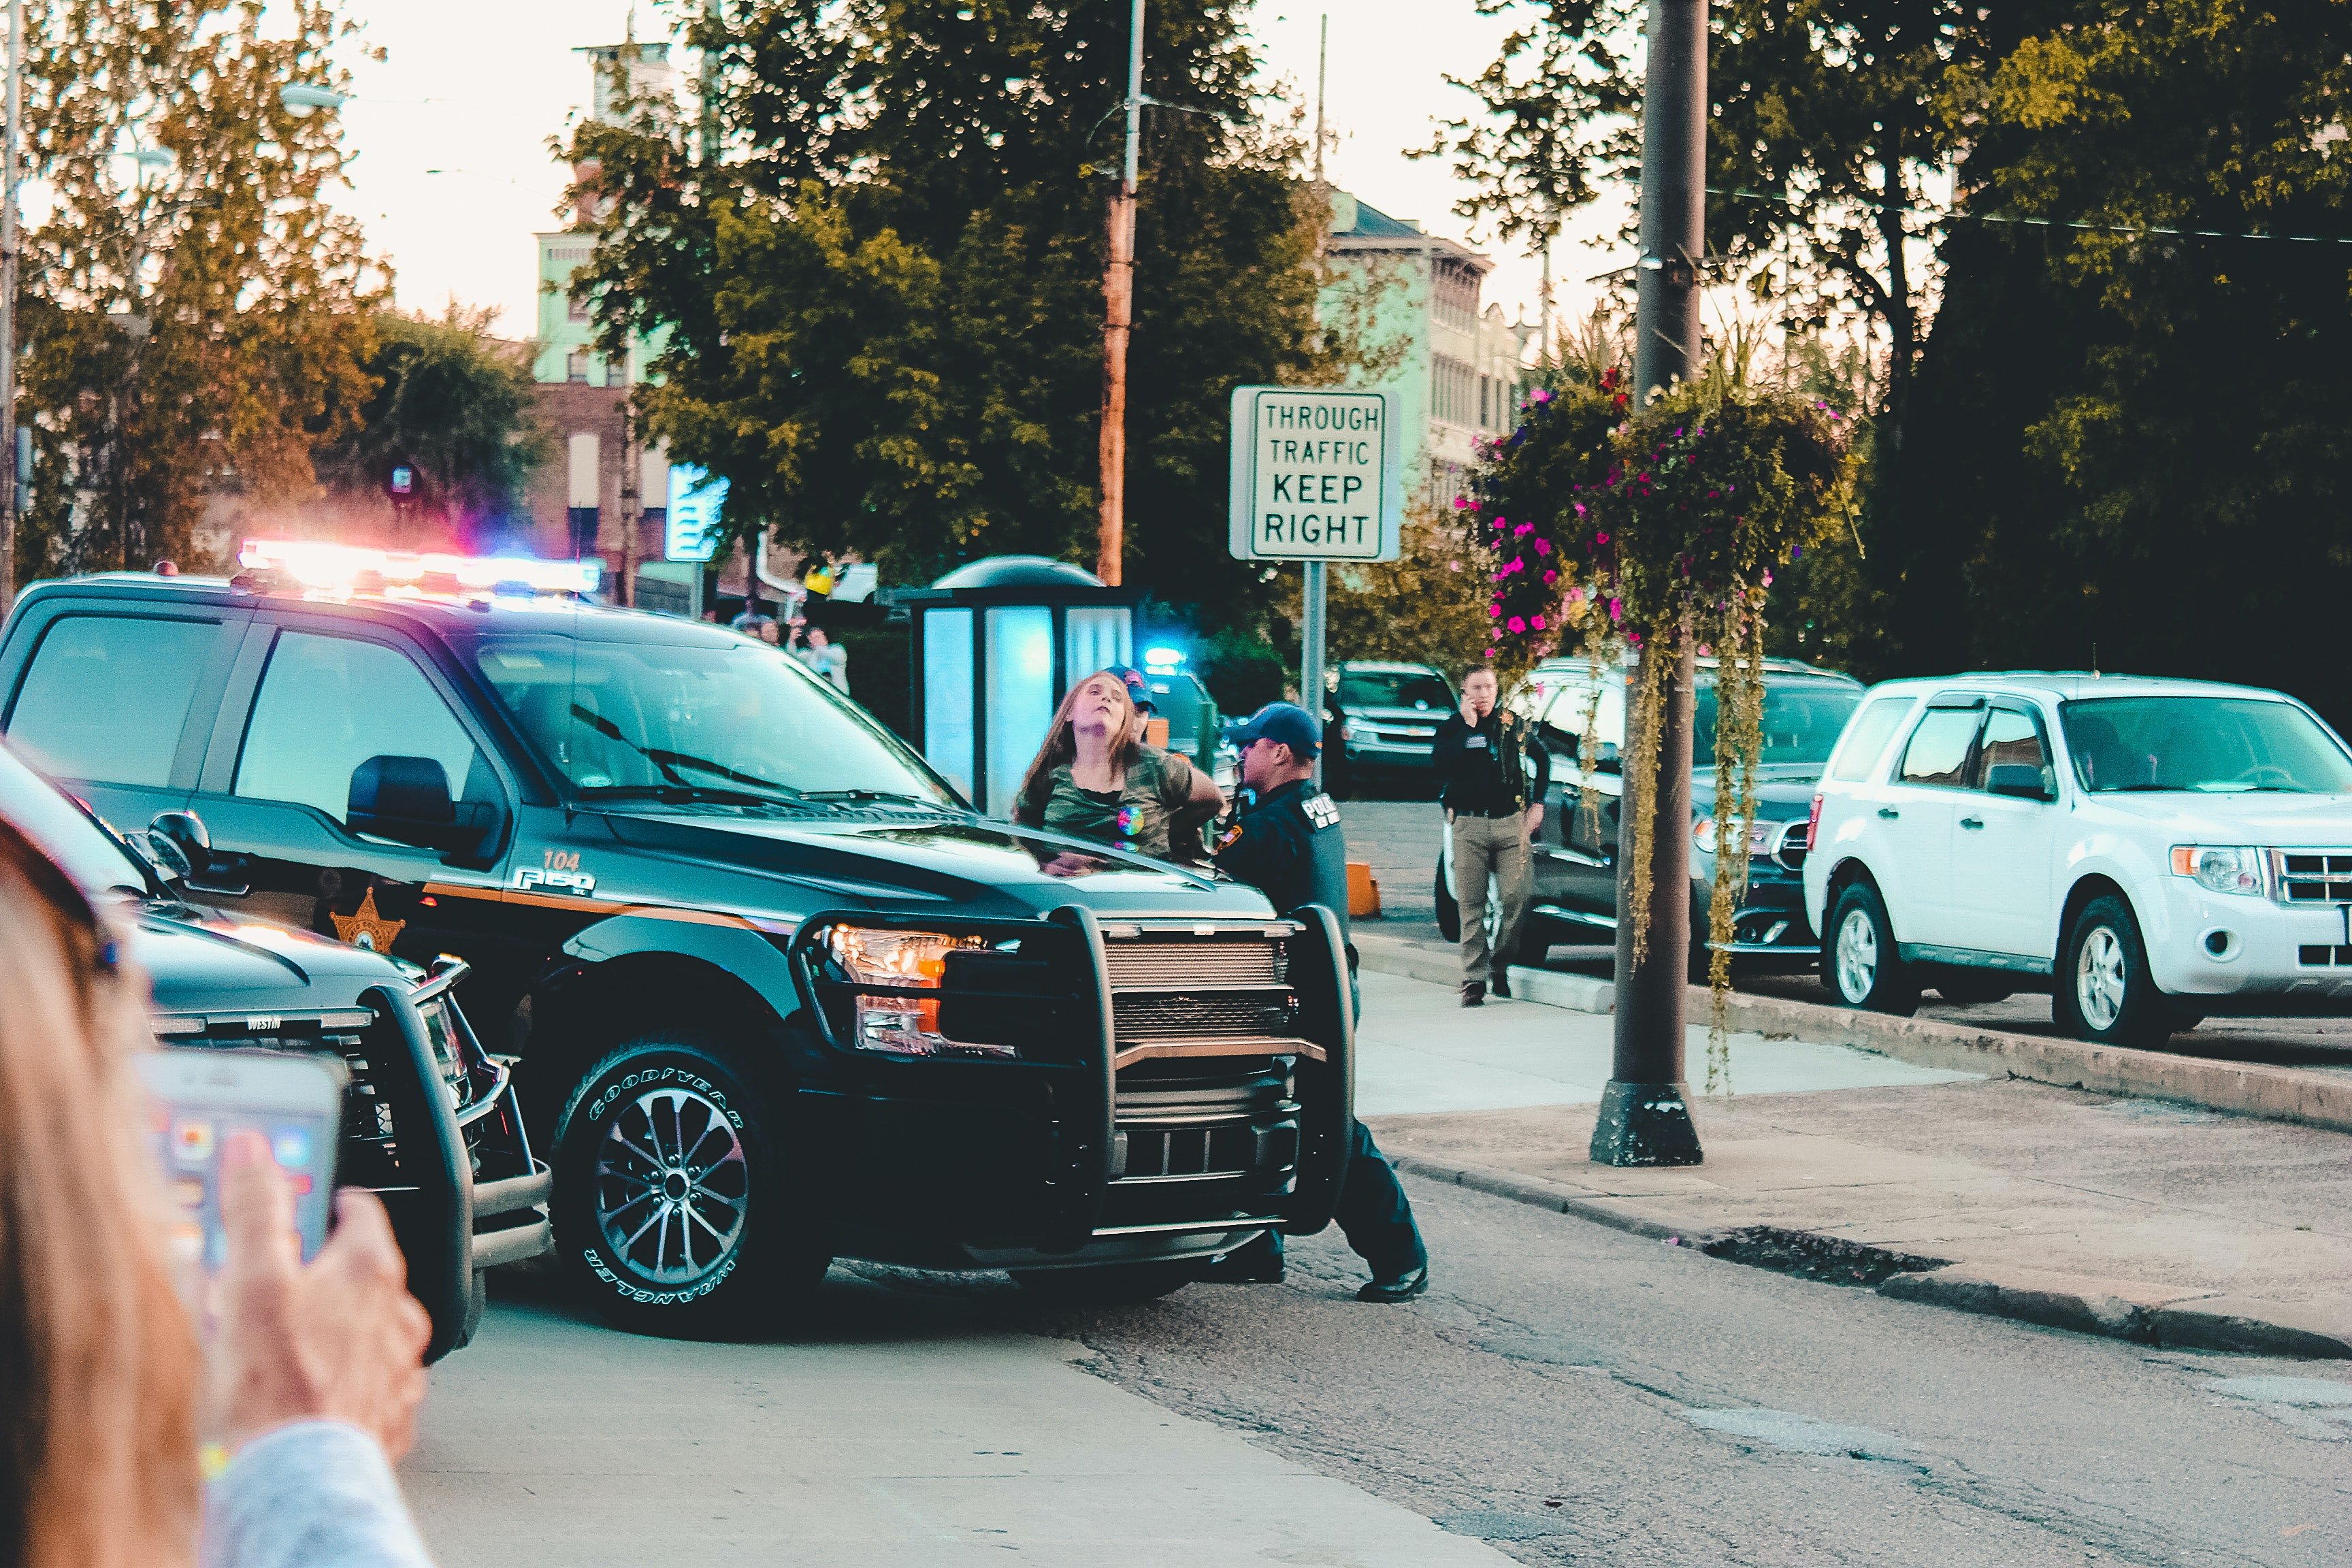 Oficial de policía arrestando a una mujer. | Foto: Pexels